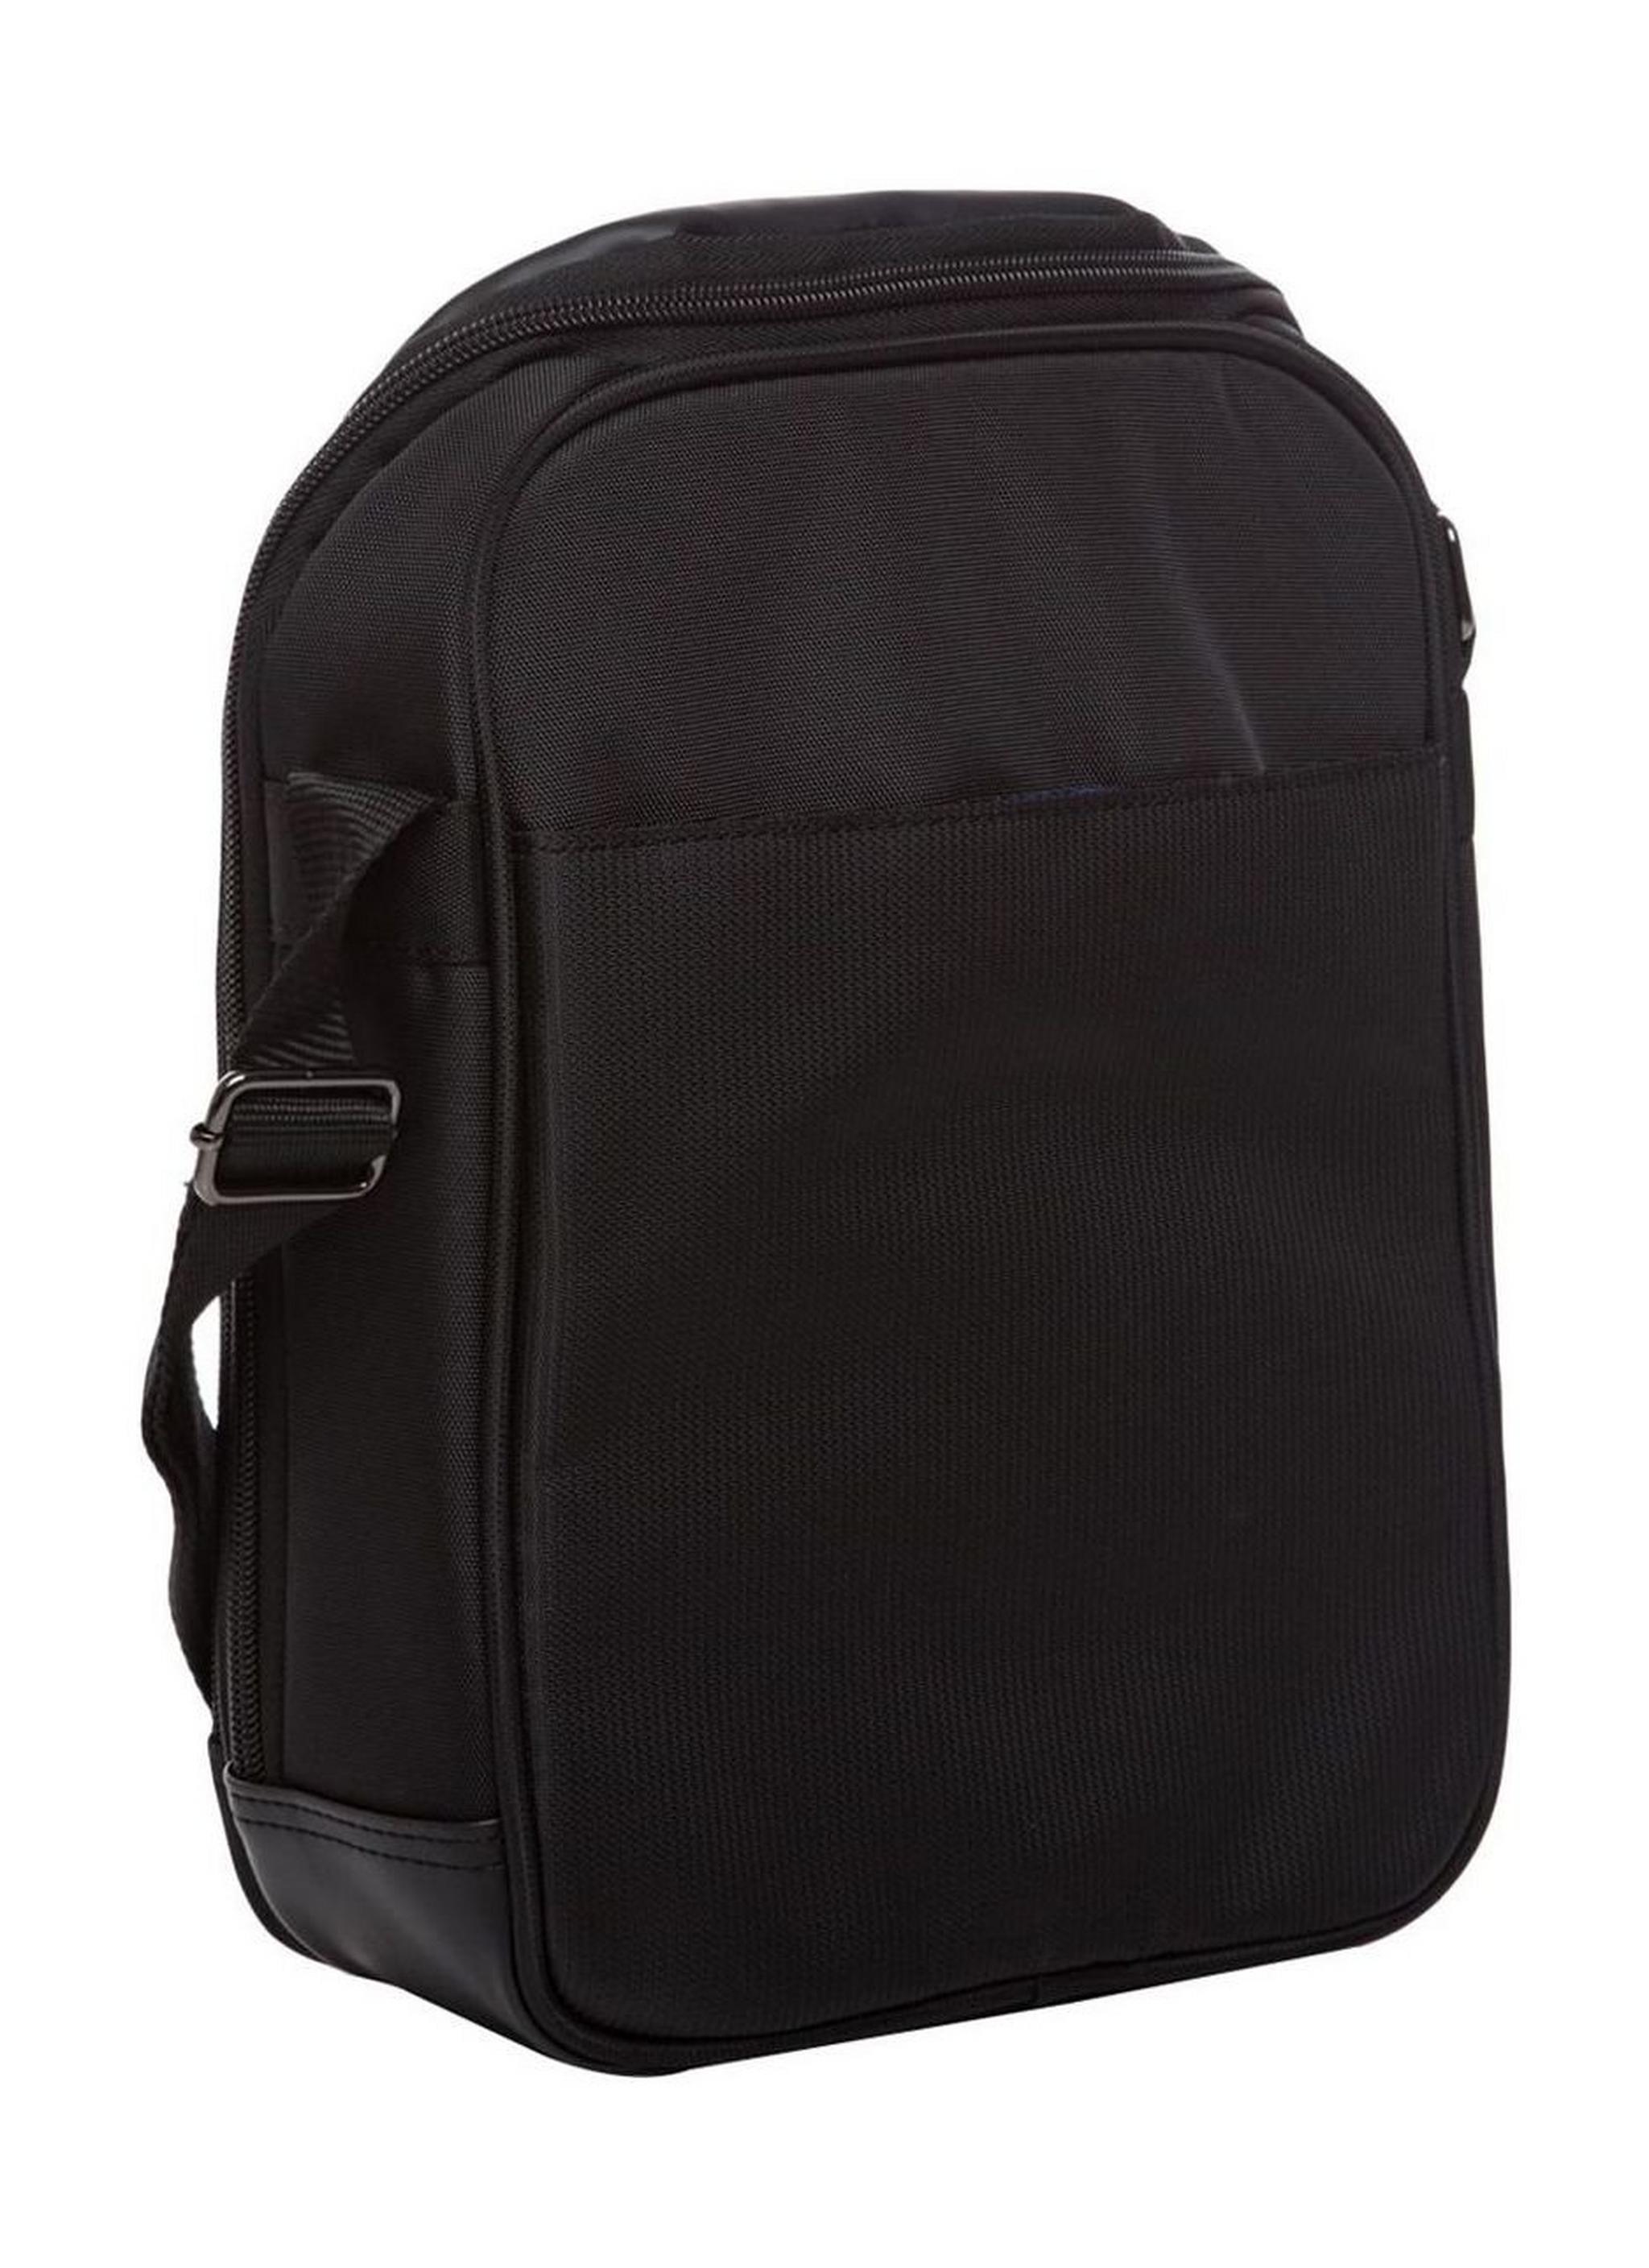 American Tourister Merit Vertical Shoulder Bag (85TX91001) - Black